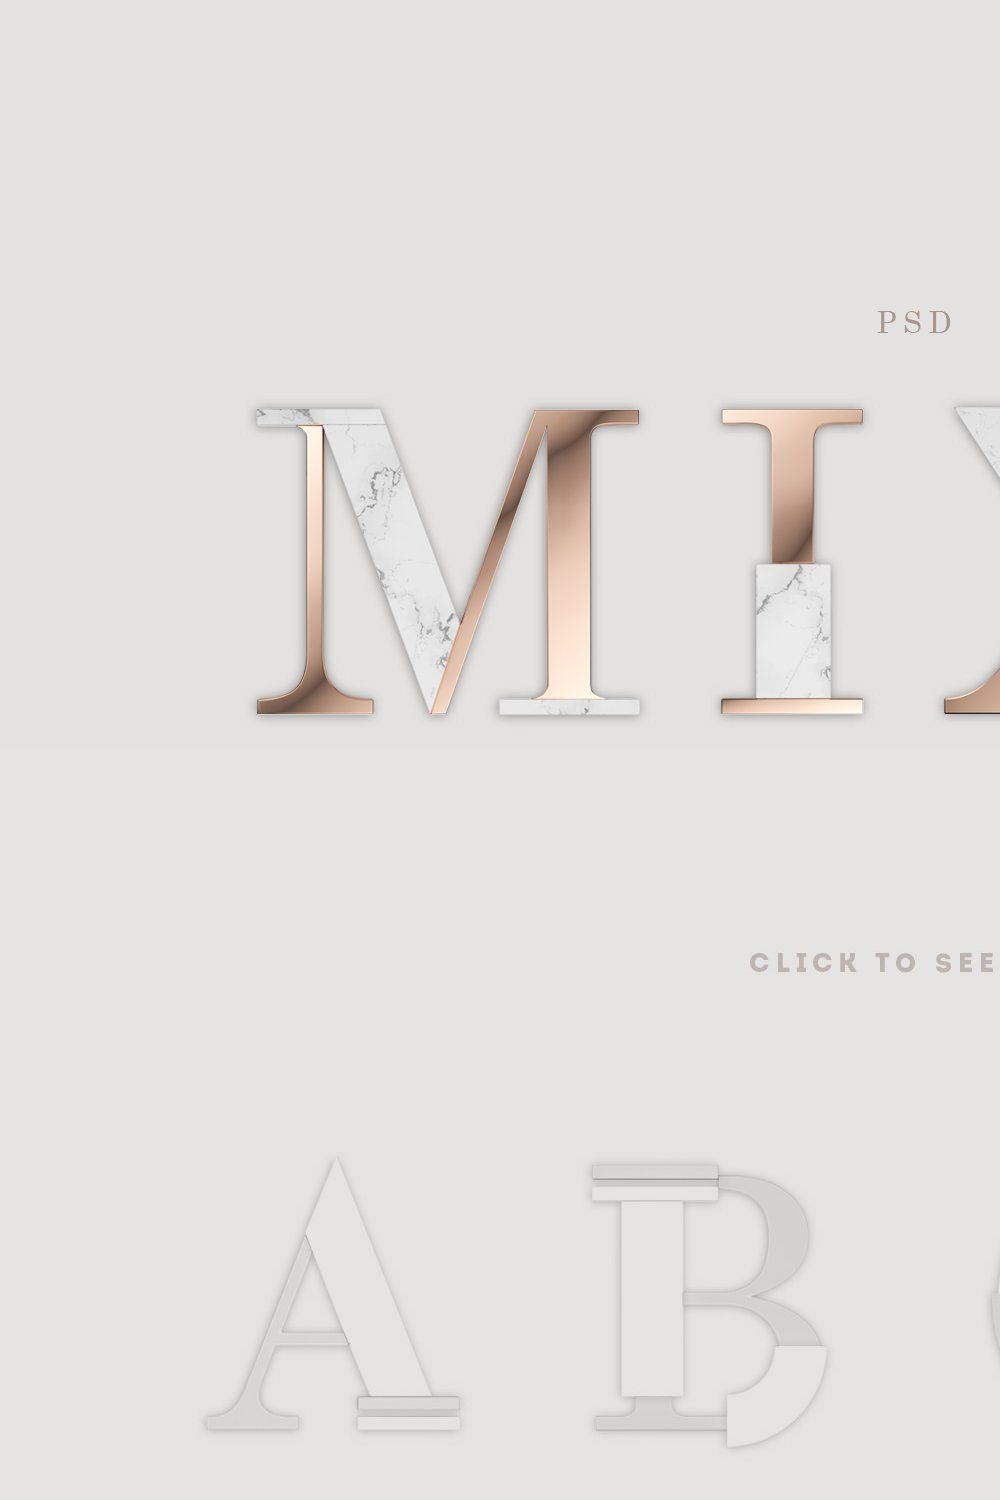 MIXO type kit pinterest preview image.